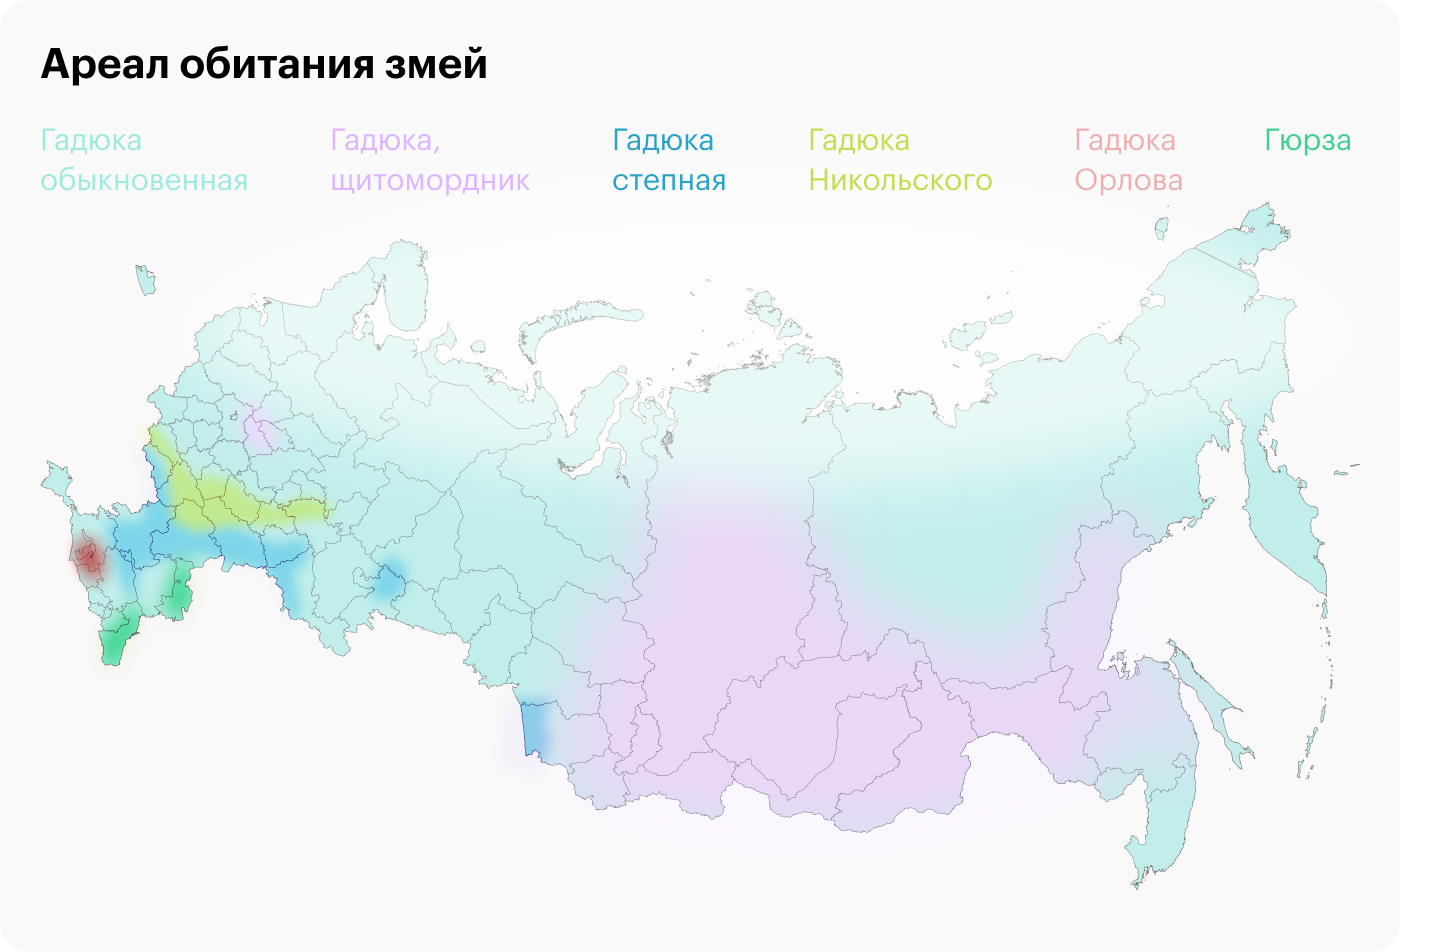 Гадюки живут не только в средней полосе, в России они встречаются чаще всего